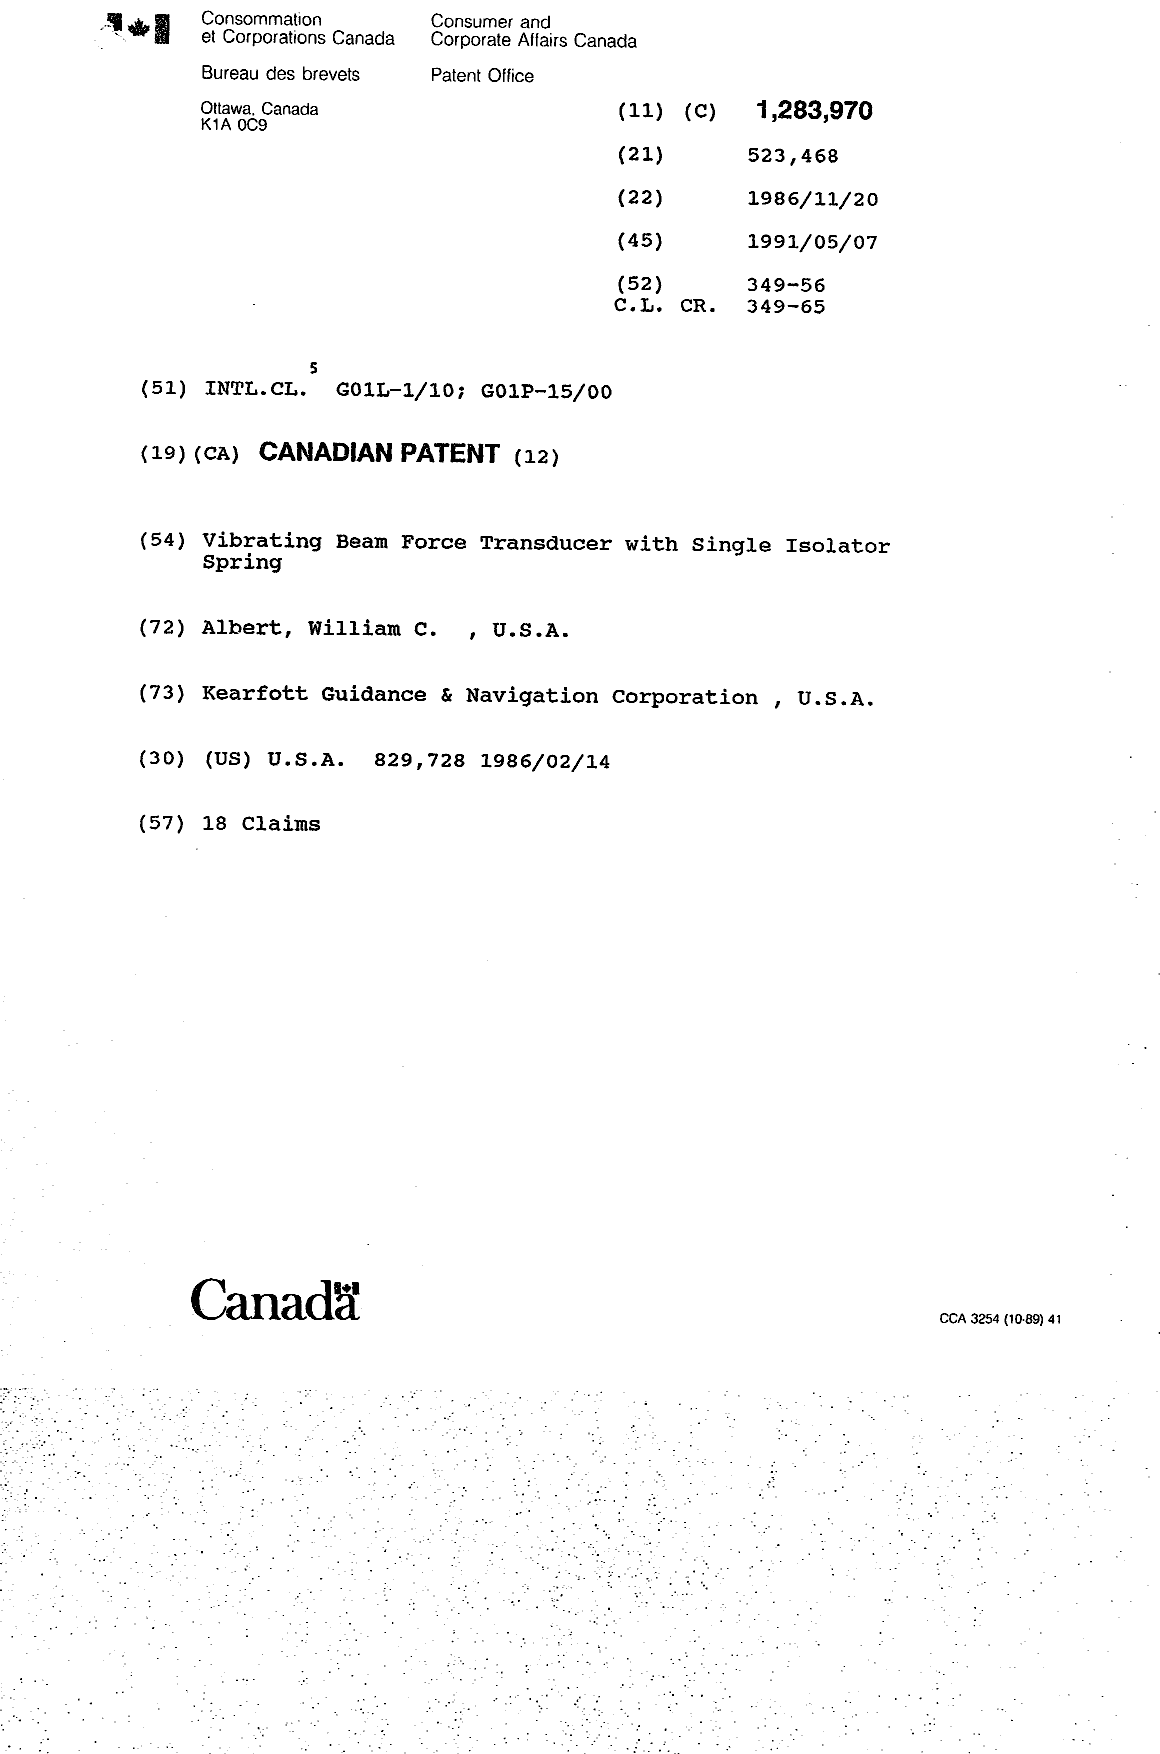 Document de brevet canadien 1283970. Page couverture 19931020. Image 1 de 1